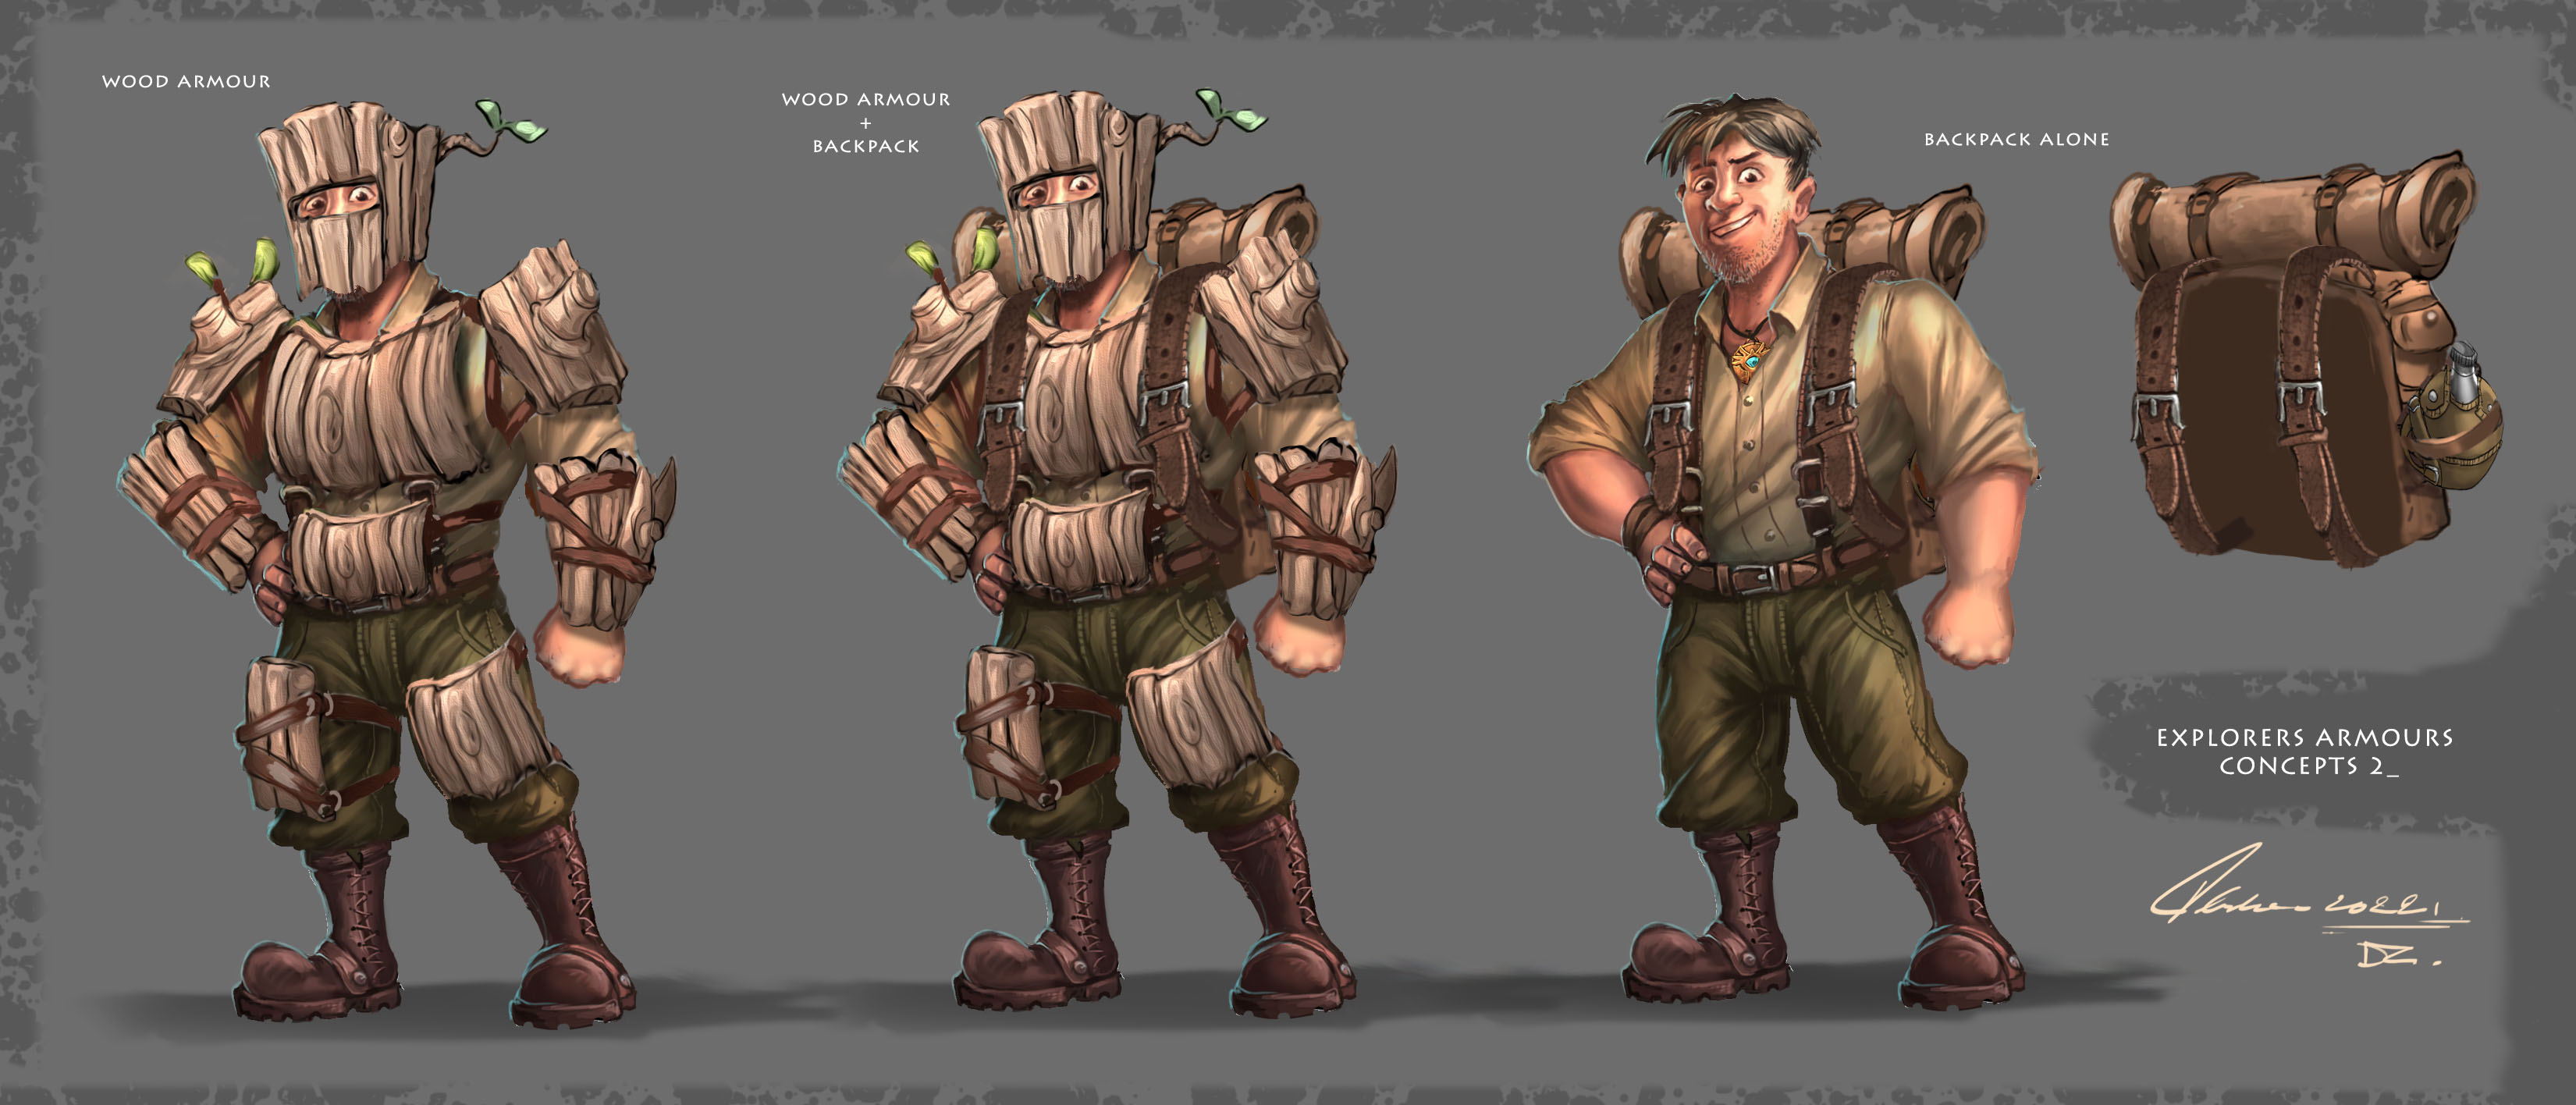 explorer armour wood armor